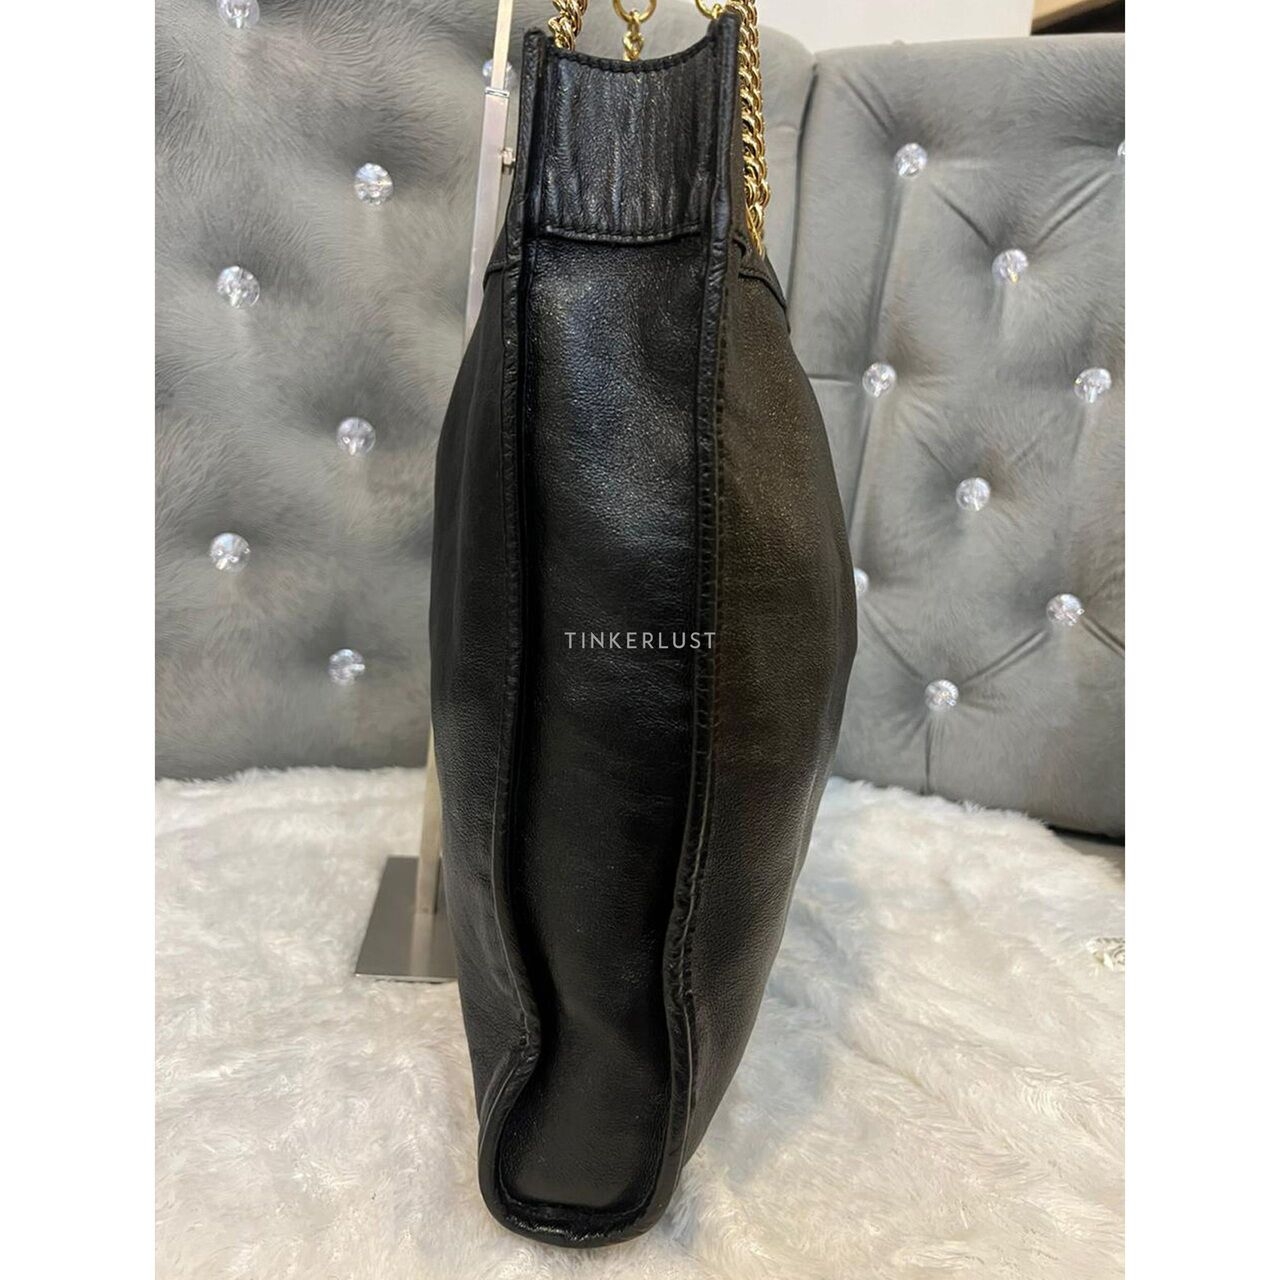 Gucci Rajah Large Black Leather Tote Bag